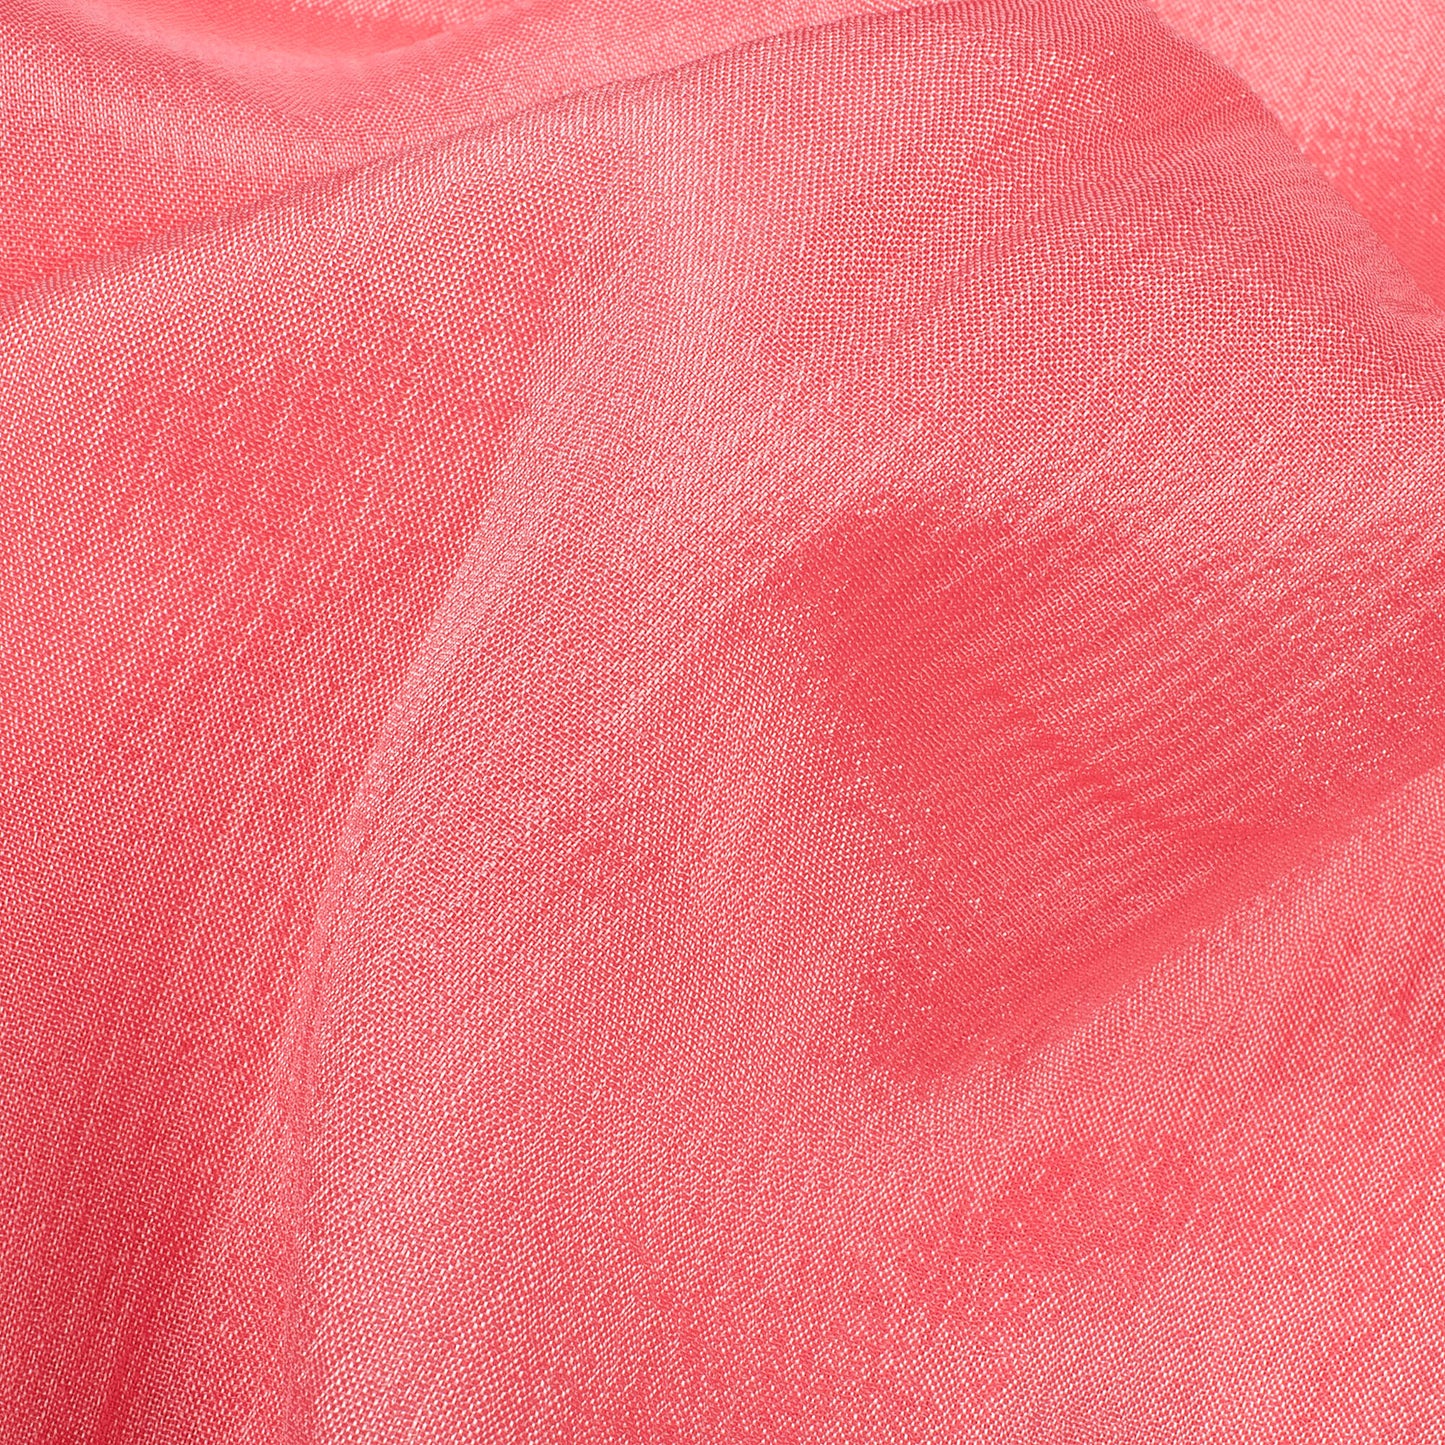 Rouge Pink Plain Pure Chinnon Chiffon Fabric